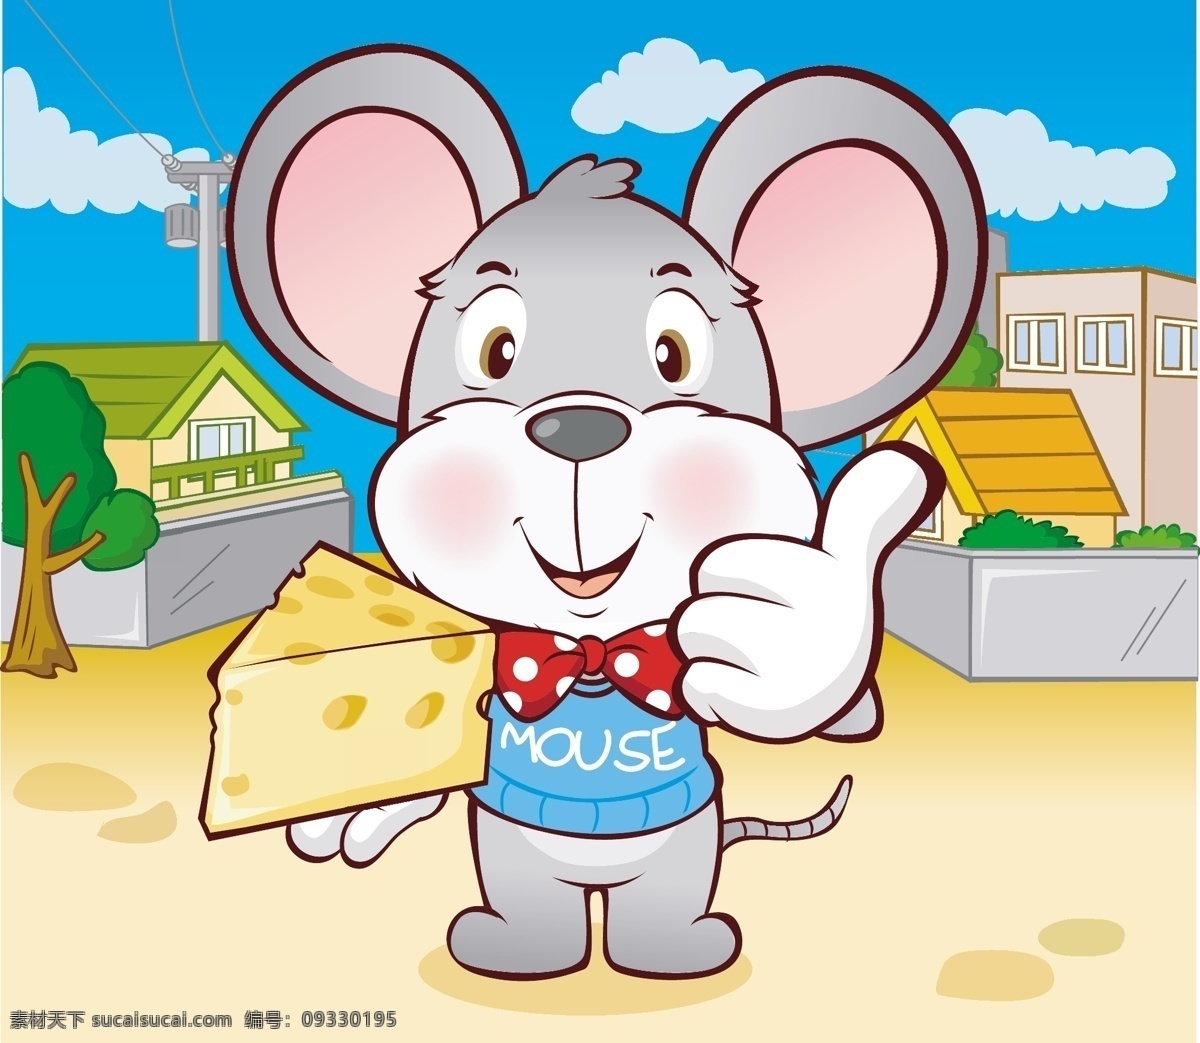 卡通老鼠 老鼠 新年 矢量人物 儿童幼儿 韩国可爱卡通 矢量图库 十二生肖 卡通动物 矢量